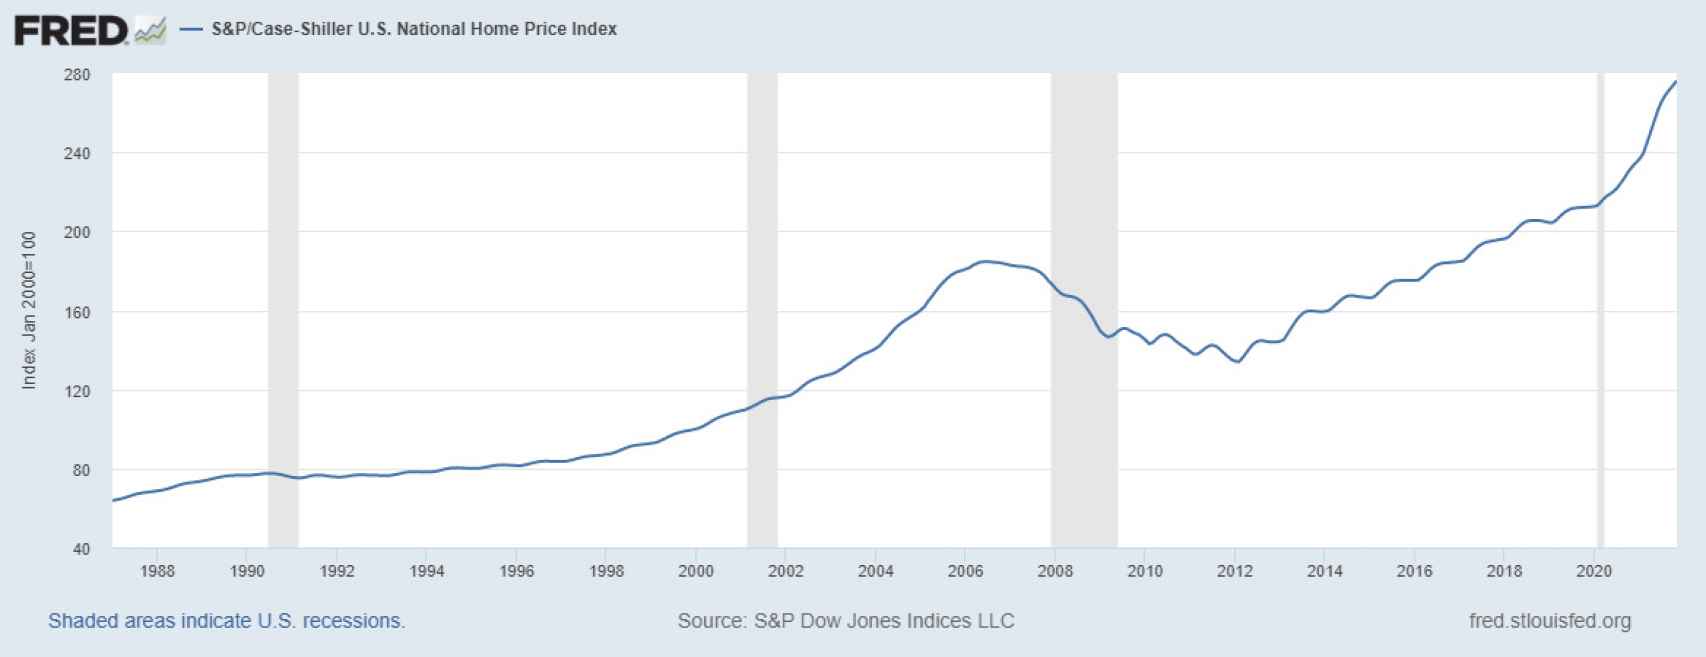 Indice de precios de la vivienda en EEUU